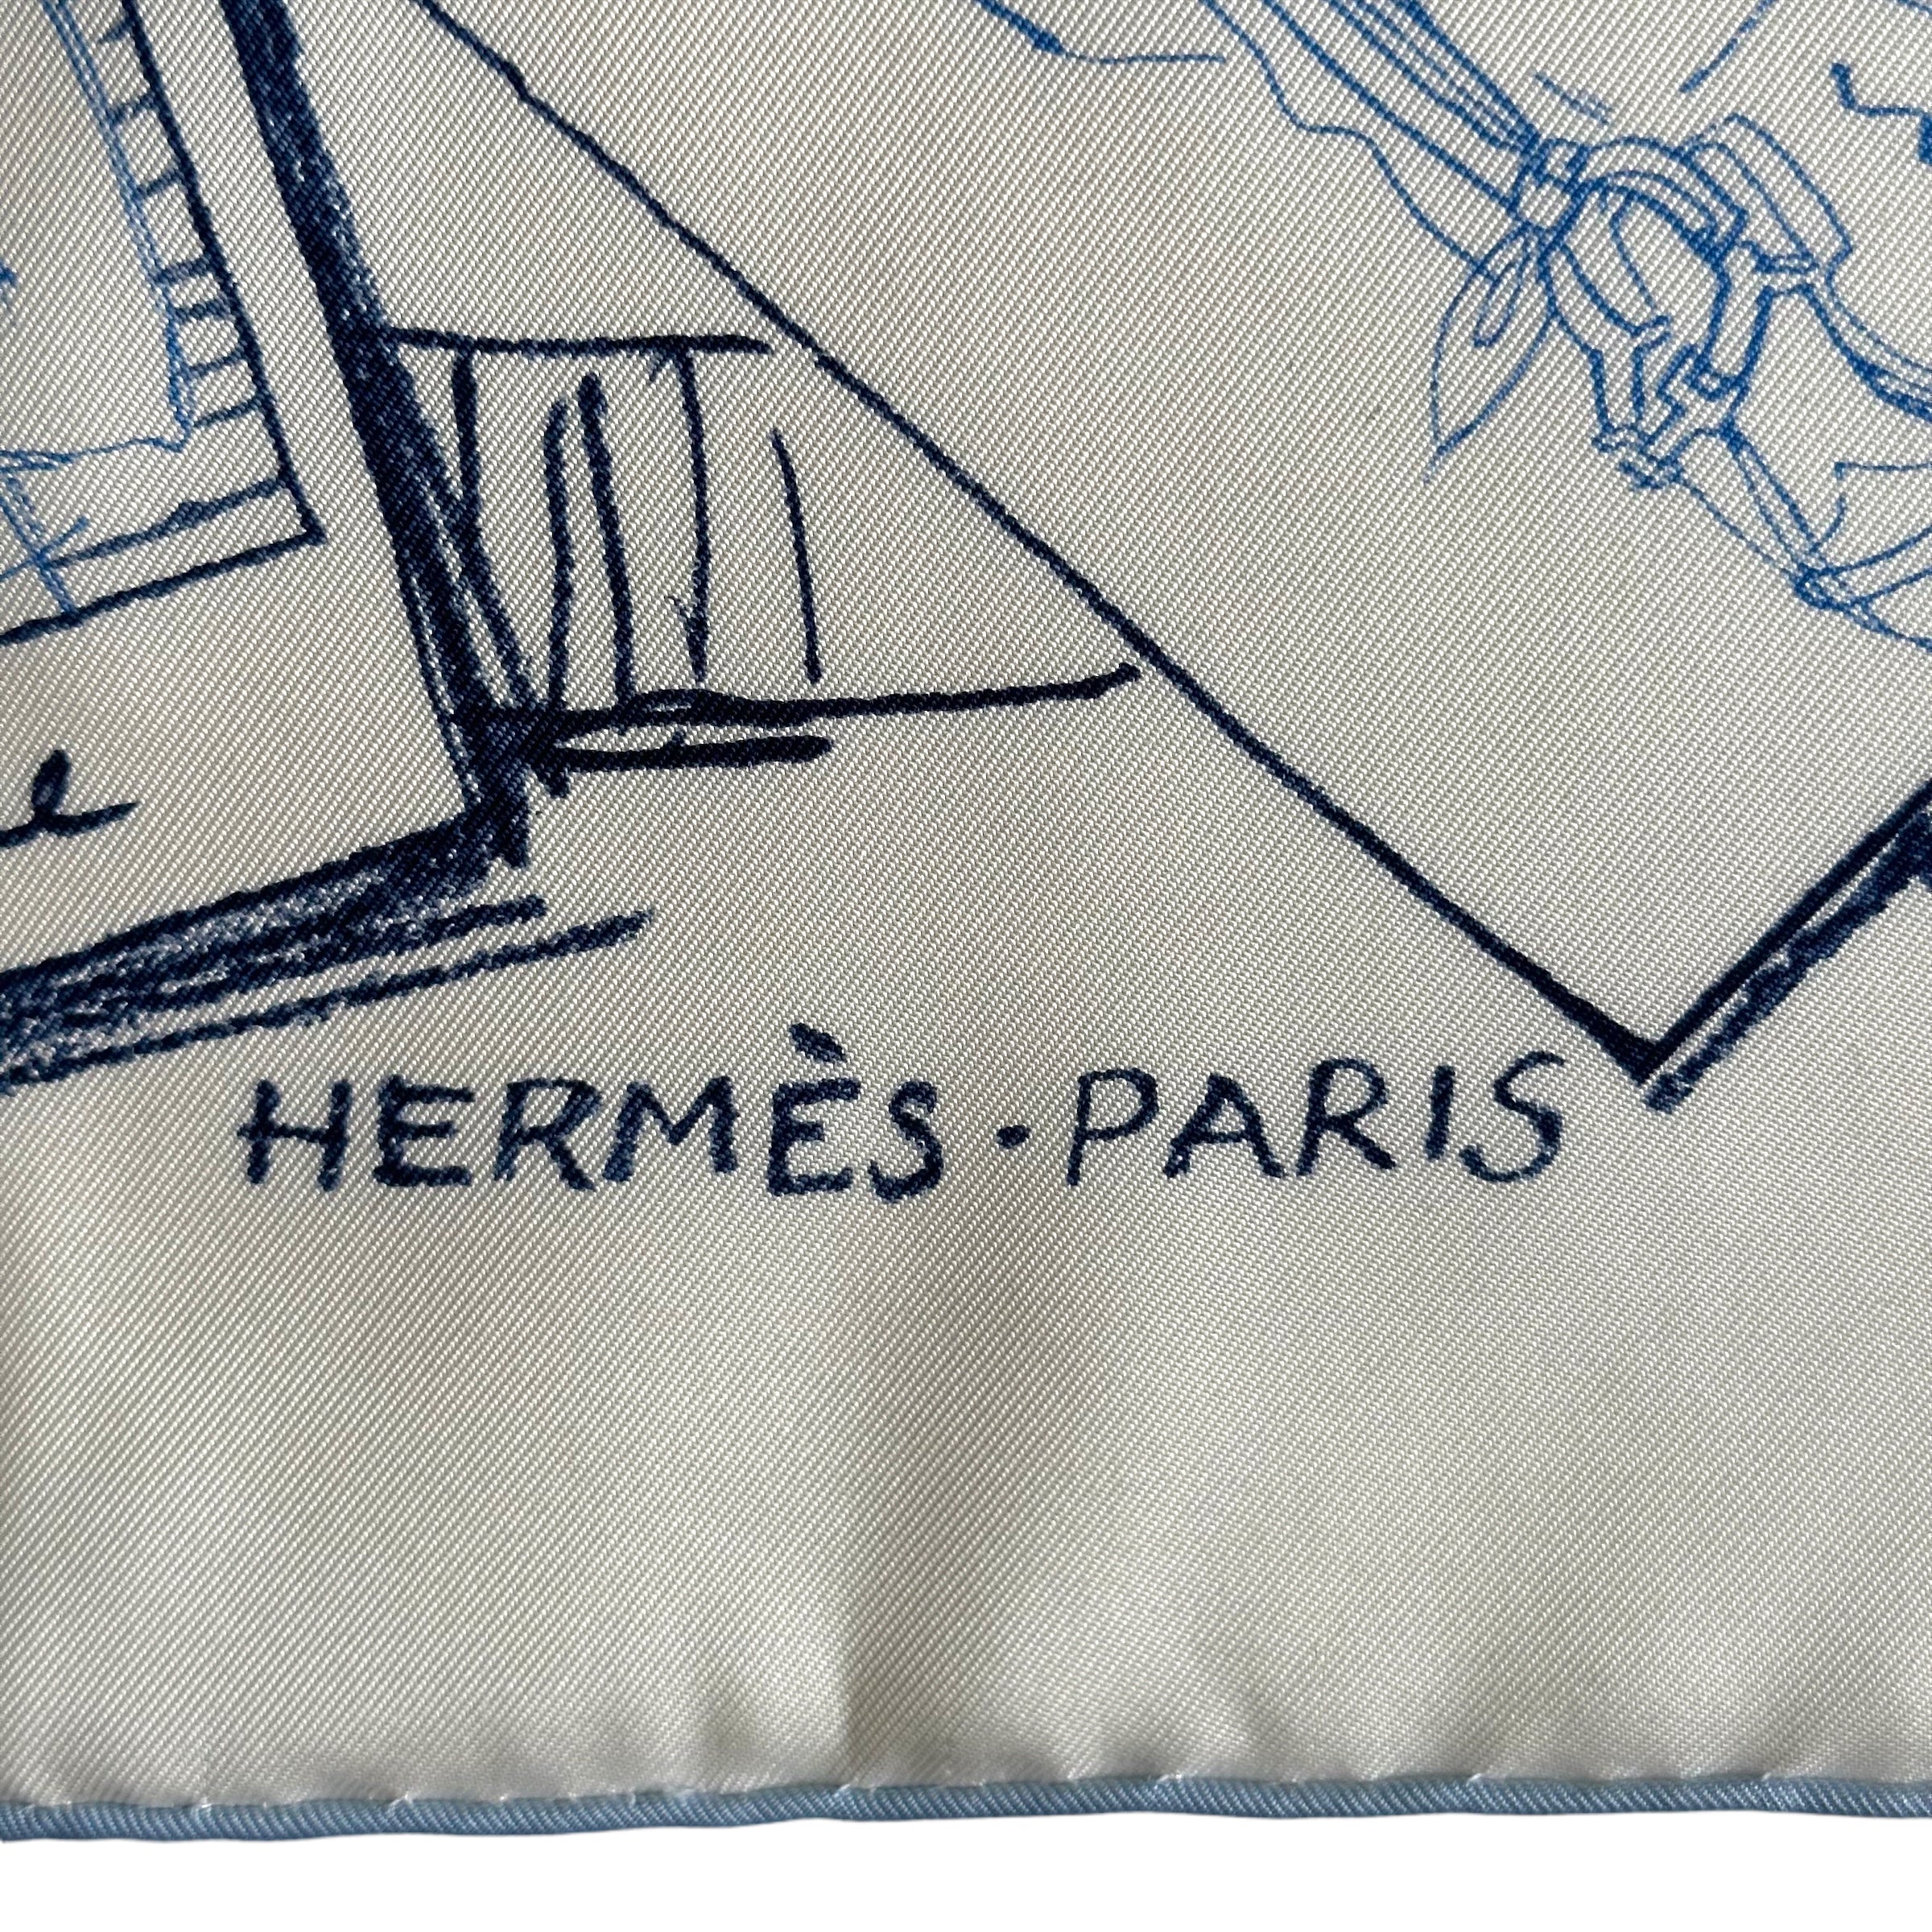 Instructions sur l'art de nouer et porter votre carré Hermès - FOULARD HERMES 70 cm